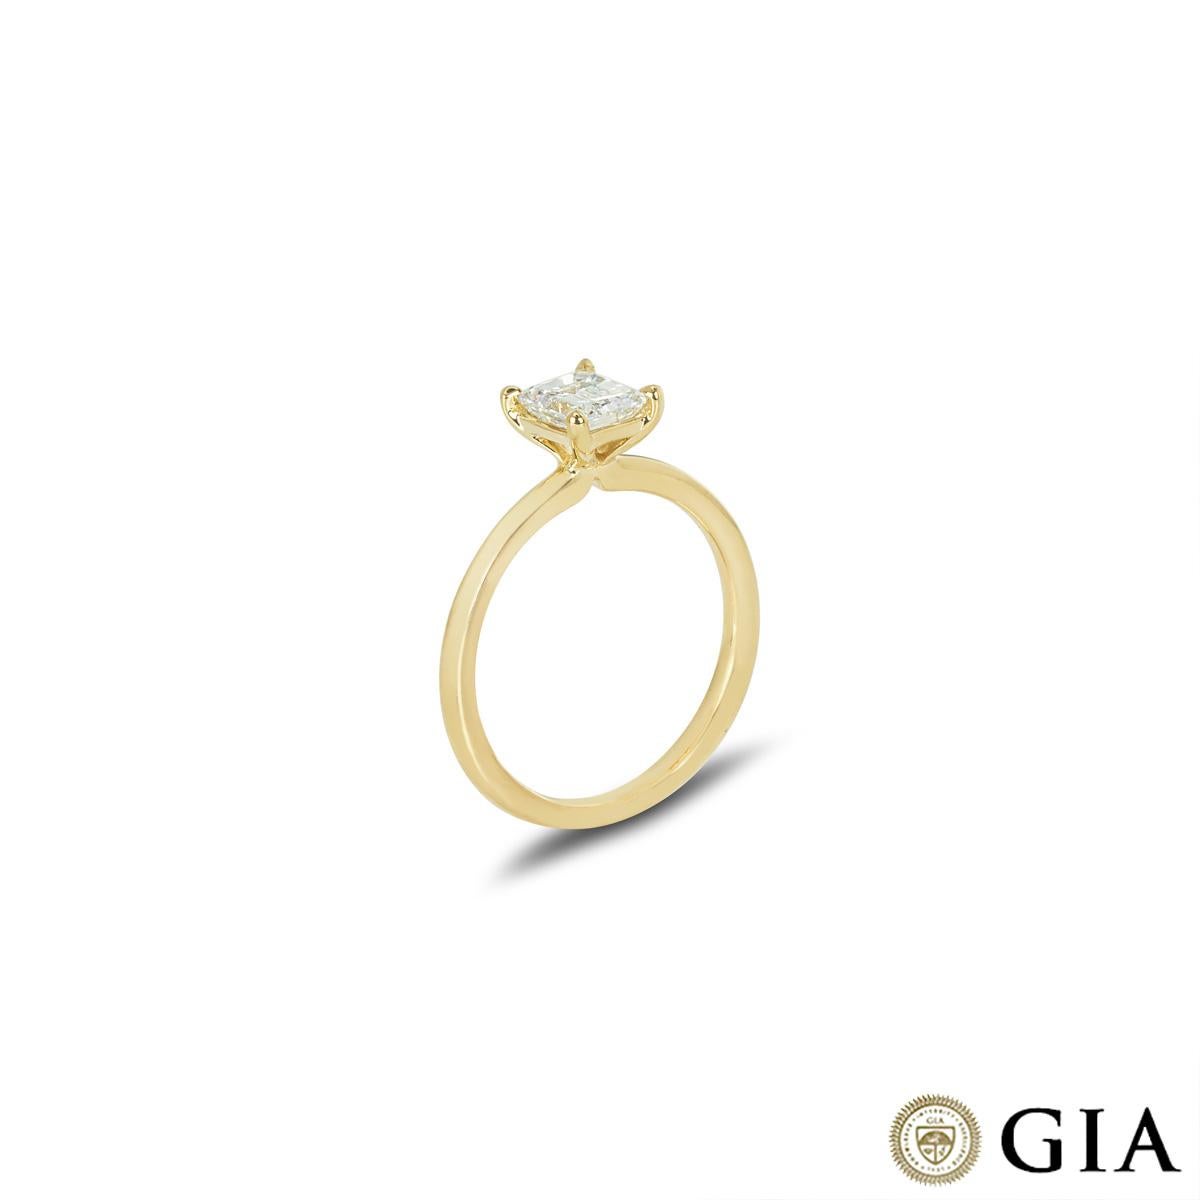 Ein bezaubernder Verlobungsring aus 18 Karat Gelbgold mit Diamanten. Der Solitär besteht aus einem Diamanten im Smaragdschliff mit einem Gewicht von 0,83 ct, Farbe E und Reinheit VS1. Der Diamant ist in einer vierzackigen Fassung auf einem